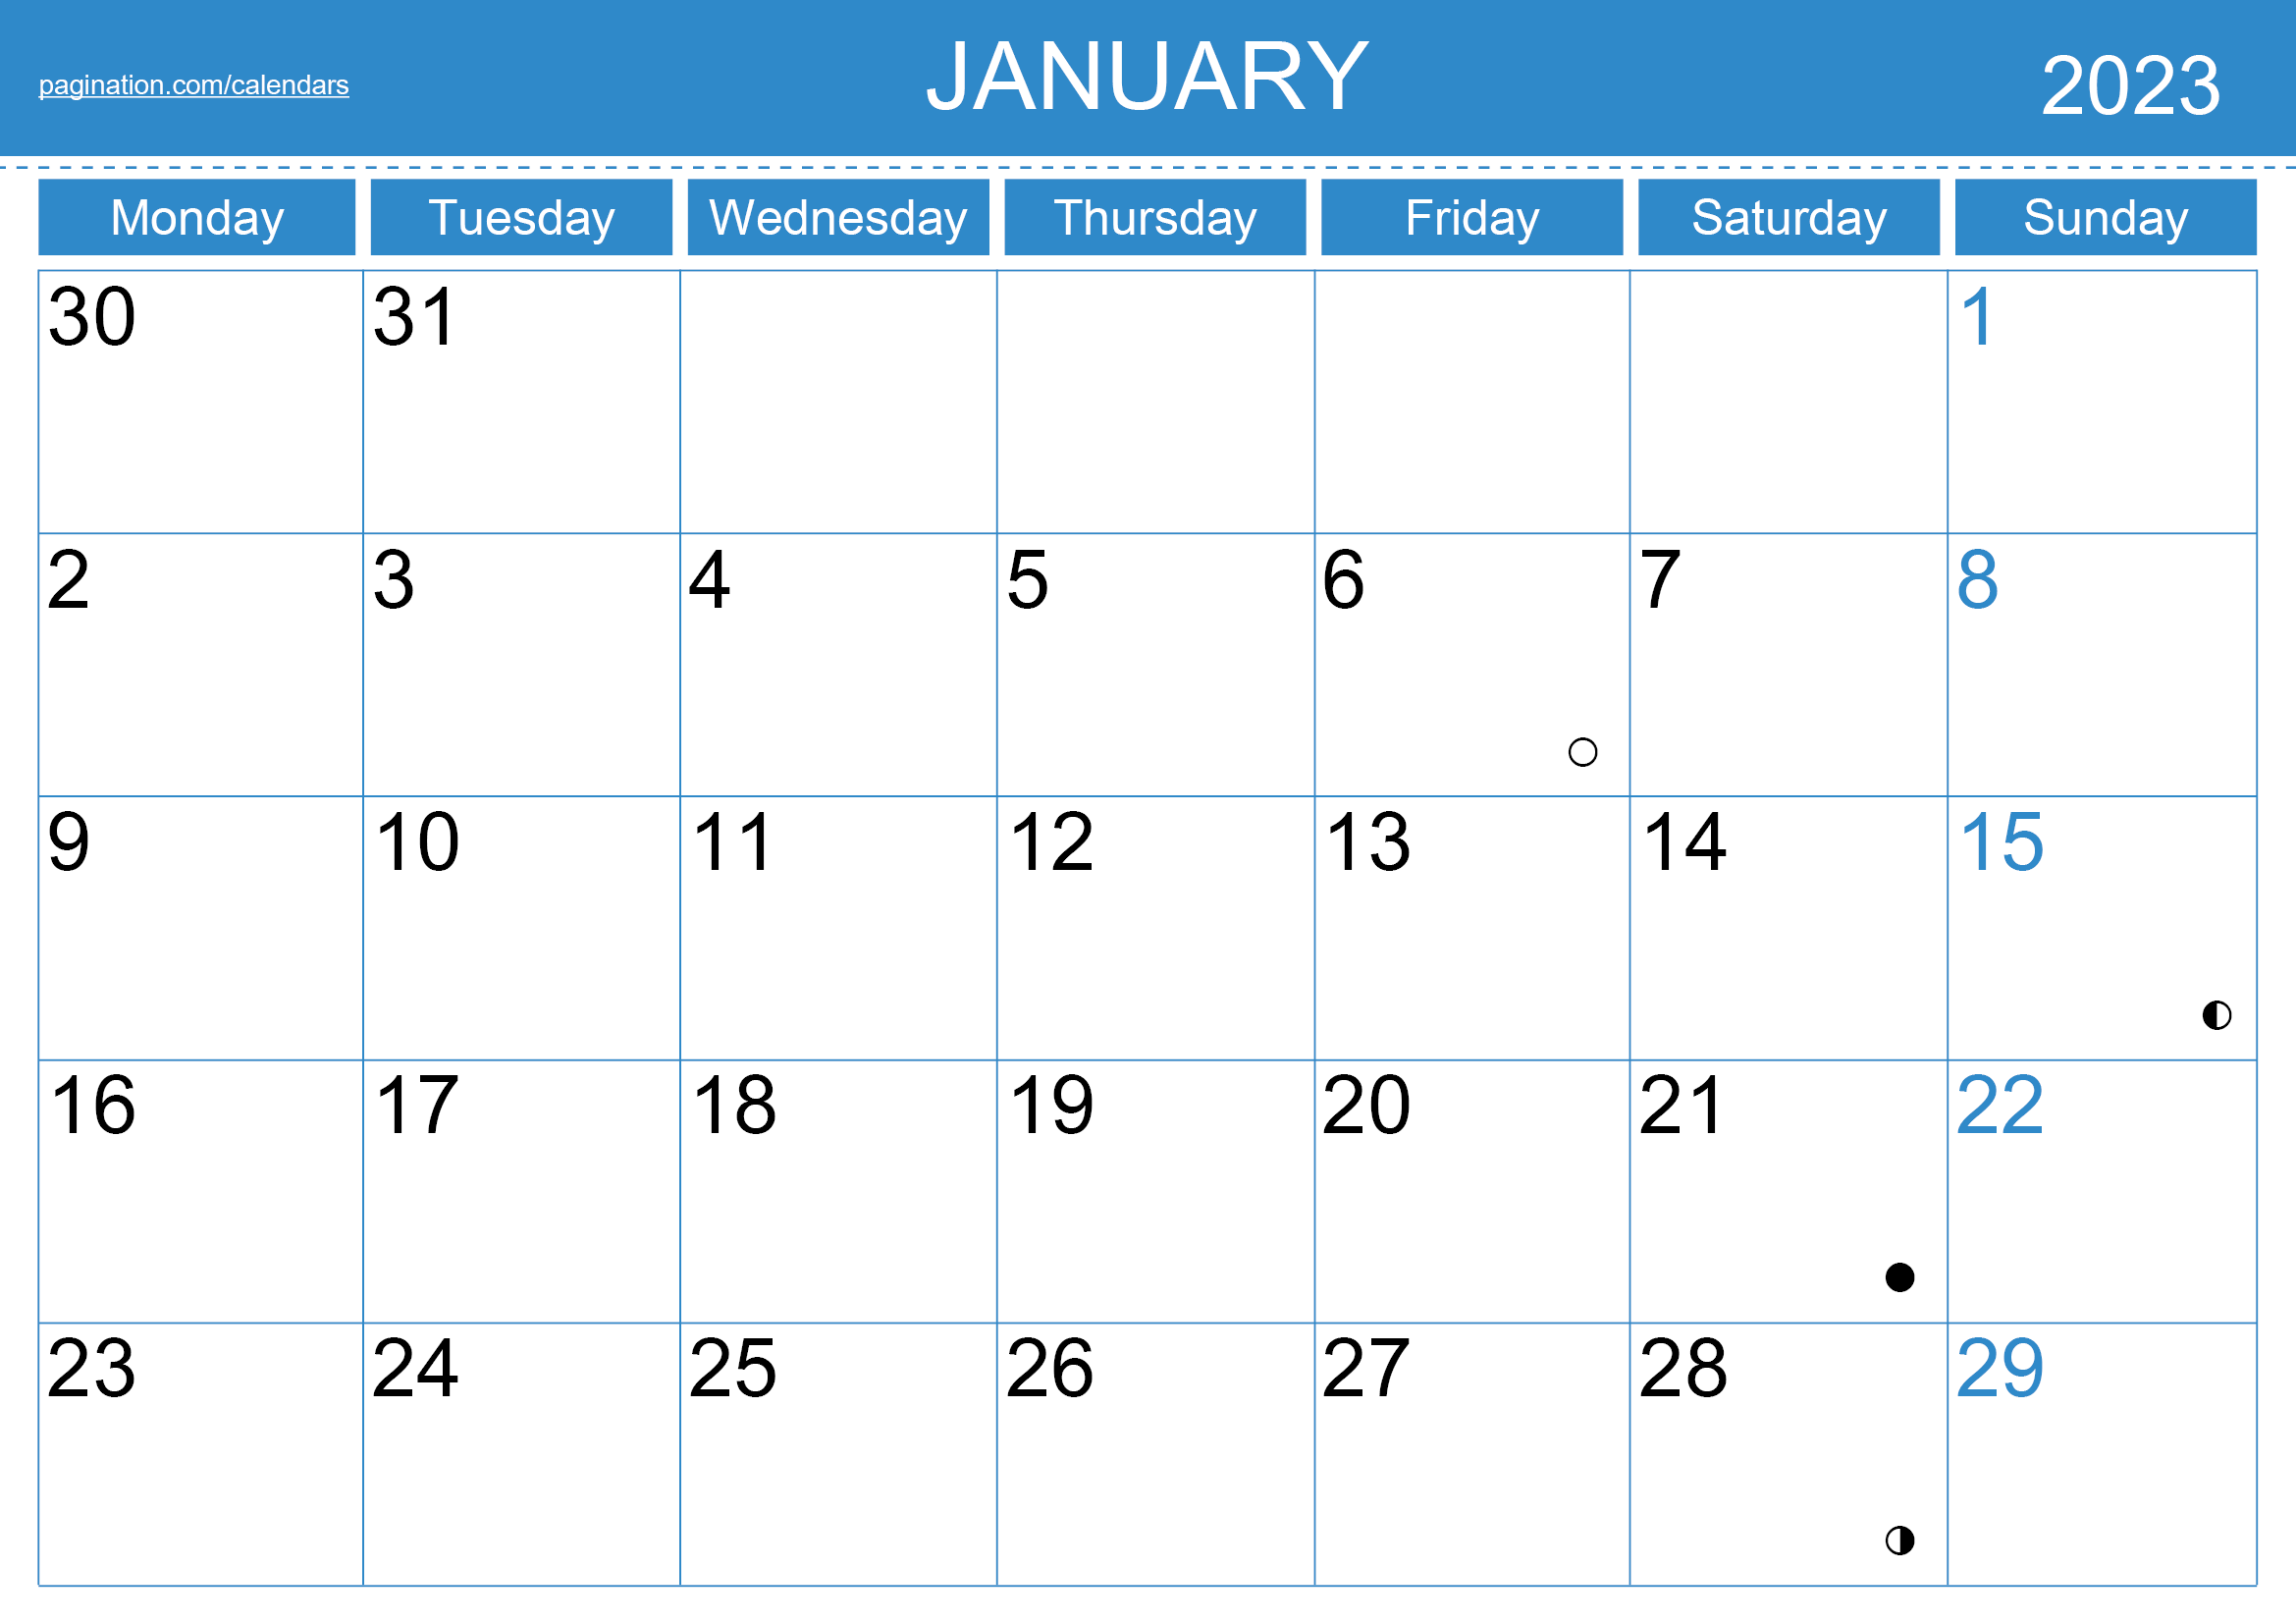 InDesign Calendar New Zealand Holidays Monday